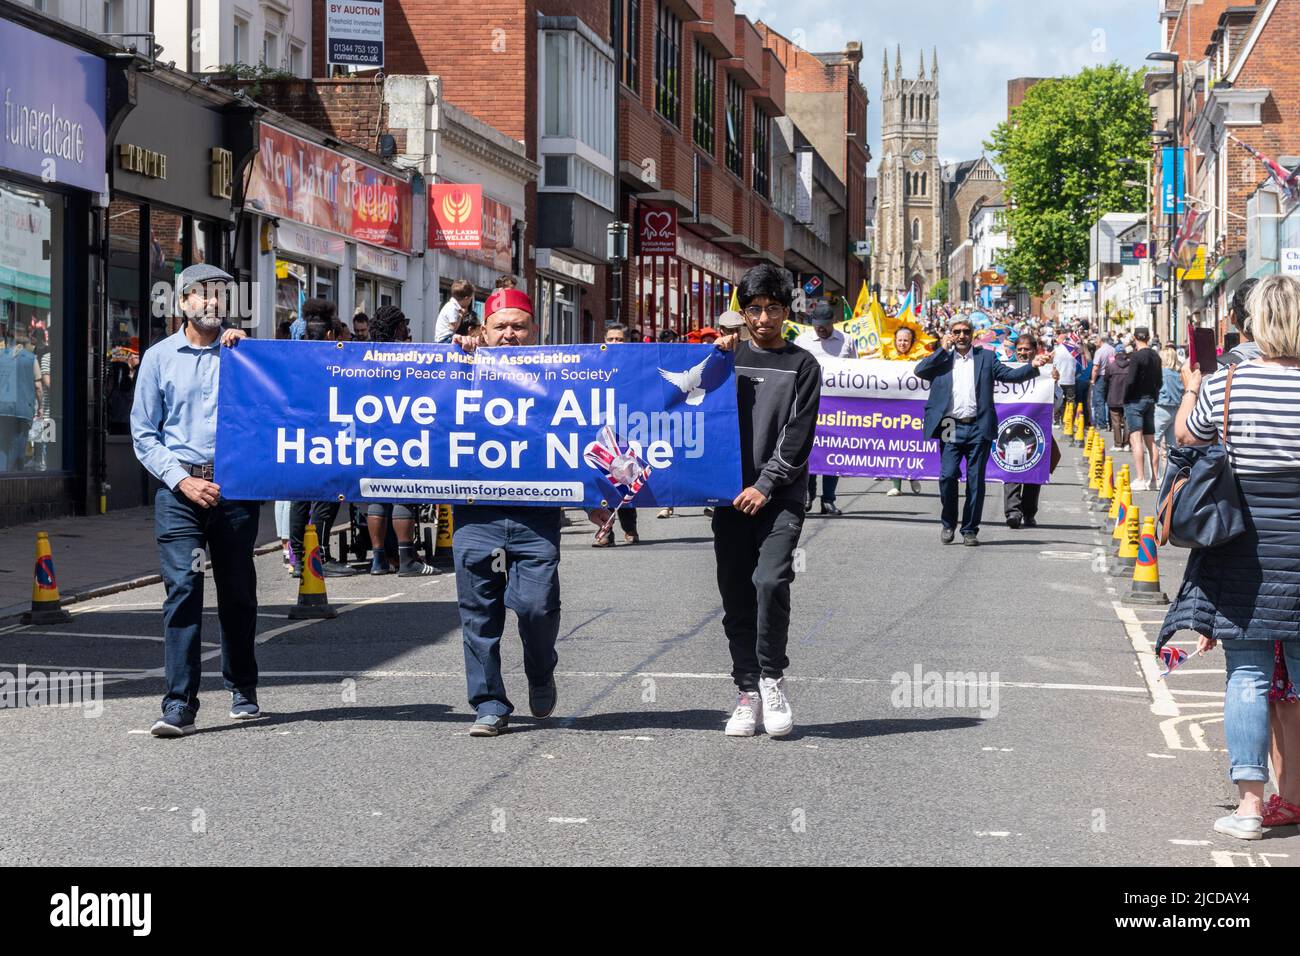 Ahmadiyya Muslim Association prenant part au Grand Parade à Victoria Day, un événement annuel à Aldershot, Hampshire, Angleterre, Royaume-Uni Banque D'Images